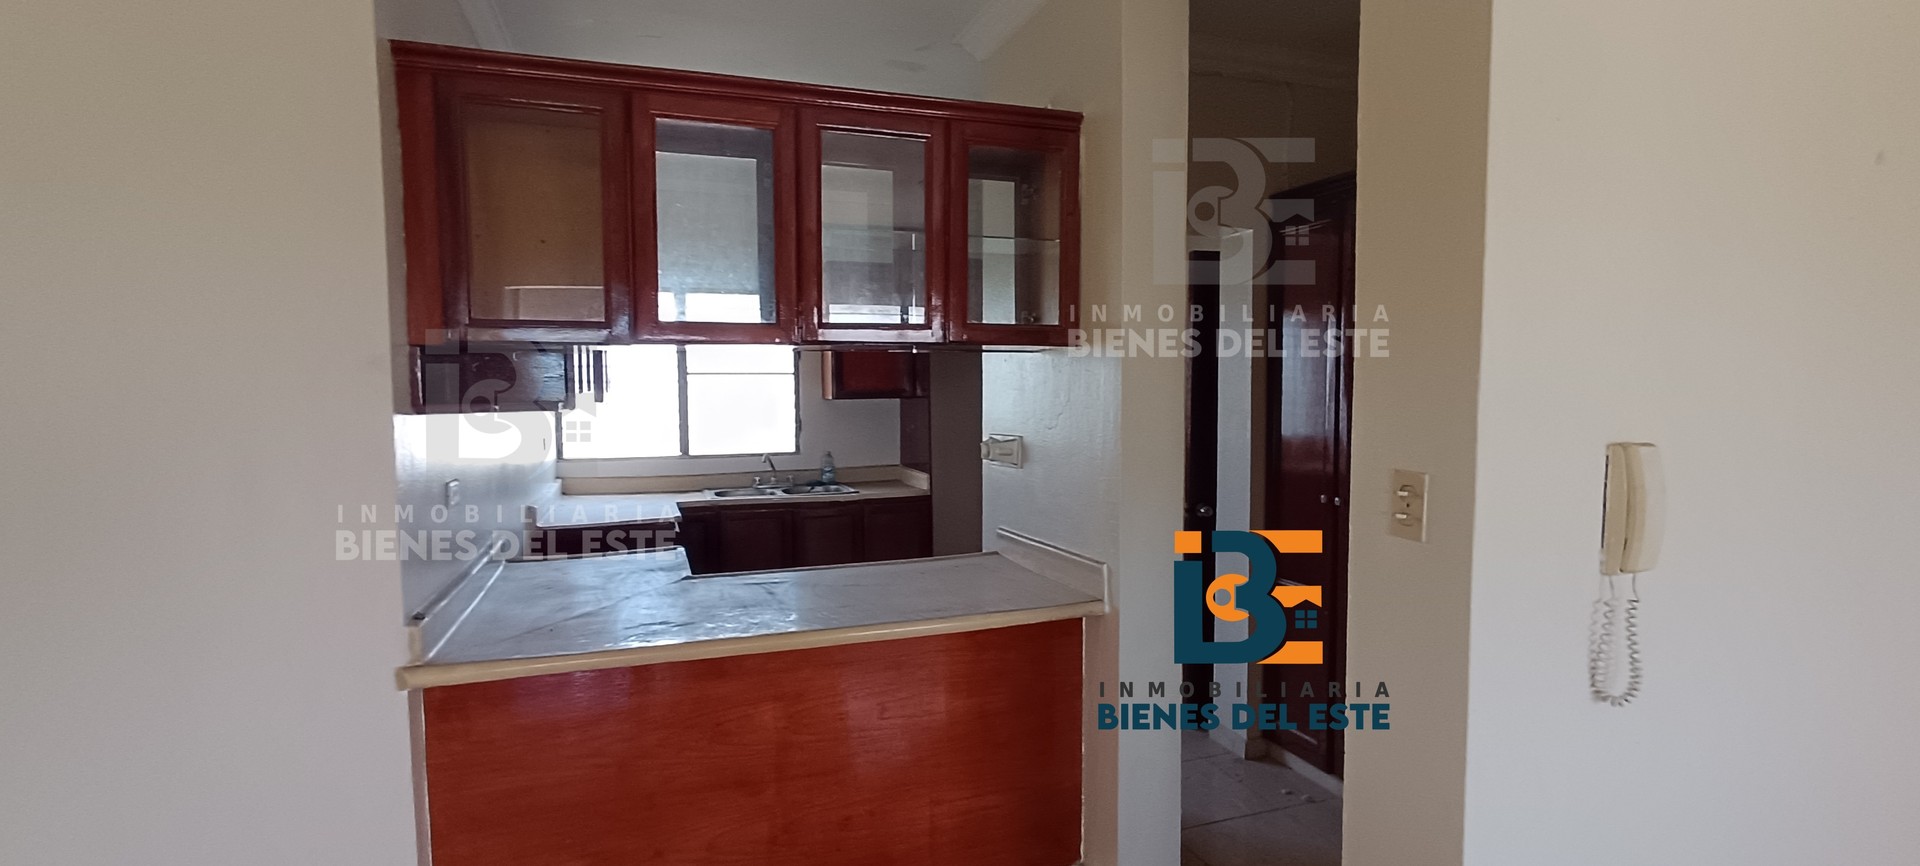 apartamentos - SE Vende Apartamento de Oportunidad en Las Rocas, Miramar 2